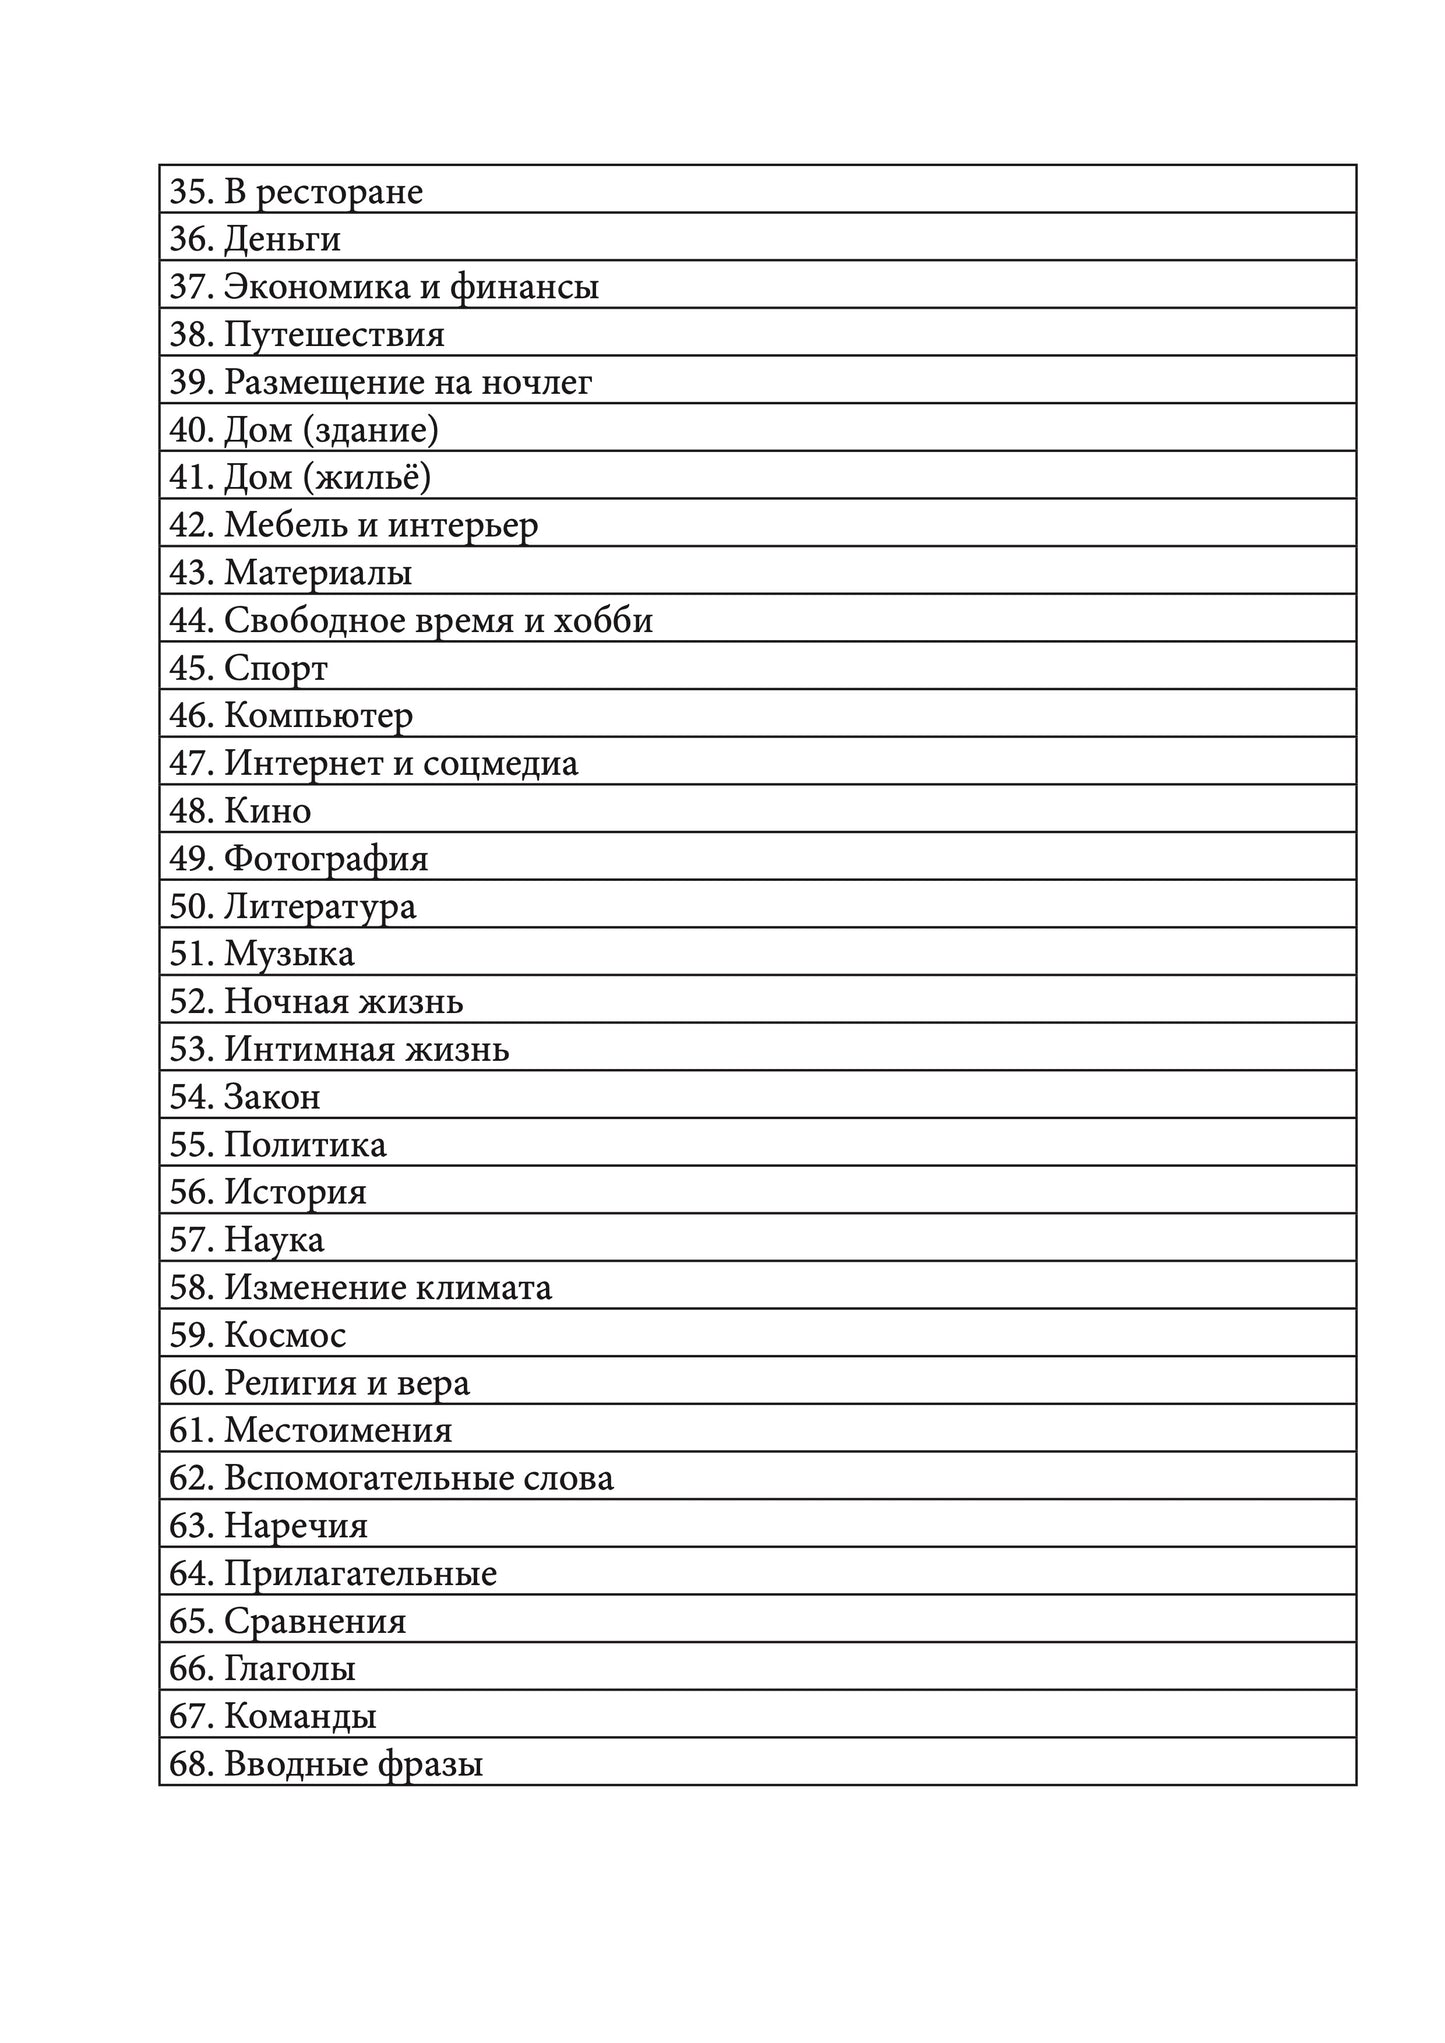 Якутский язык: тетрадь-словарь